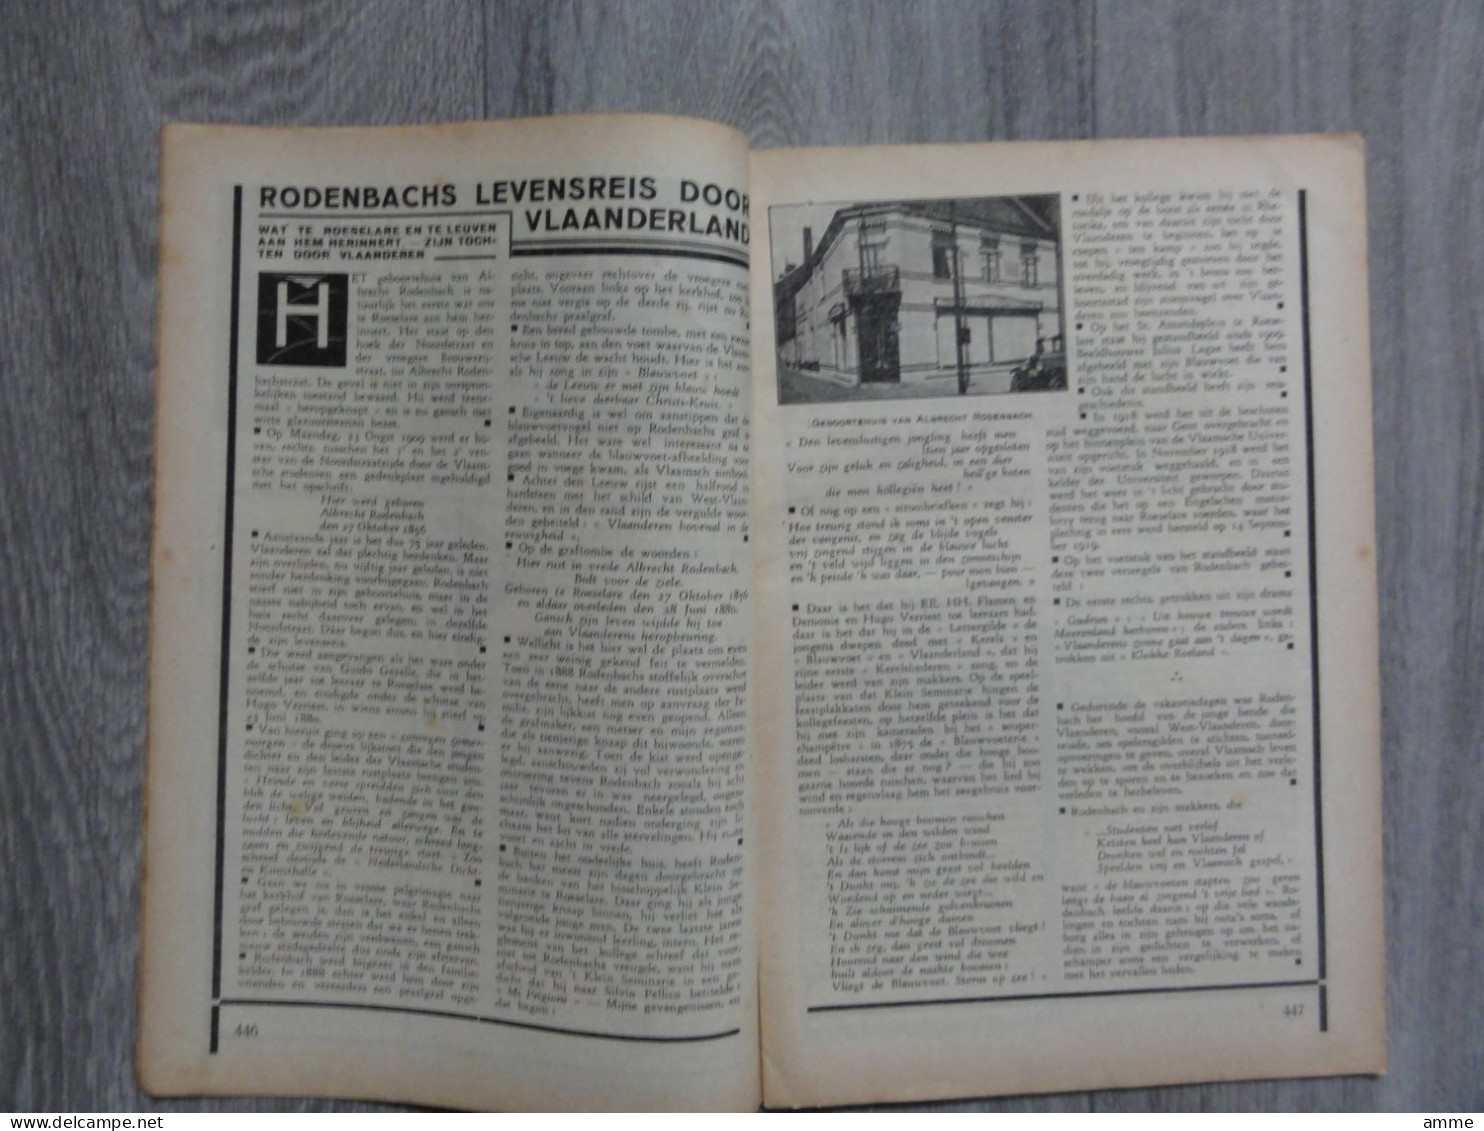 Toerisme  *  (tijdschrift N° 18 - Sept. 1930)  Roeselare - Halle - Brugge - Utrecht - - Publiciteit Hotels - Tourism